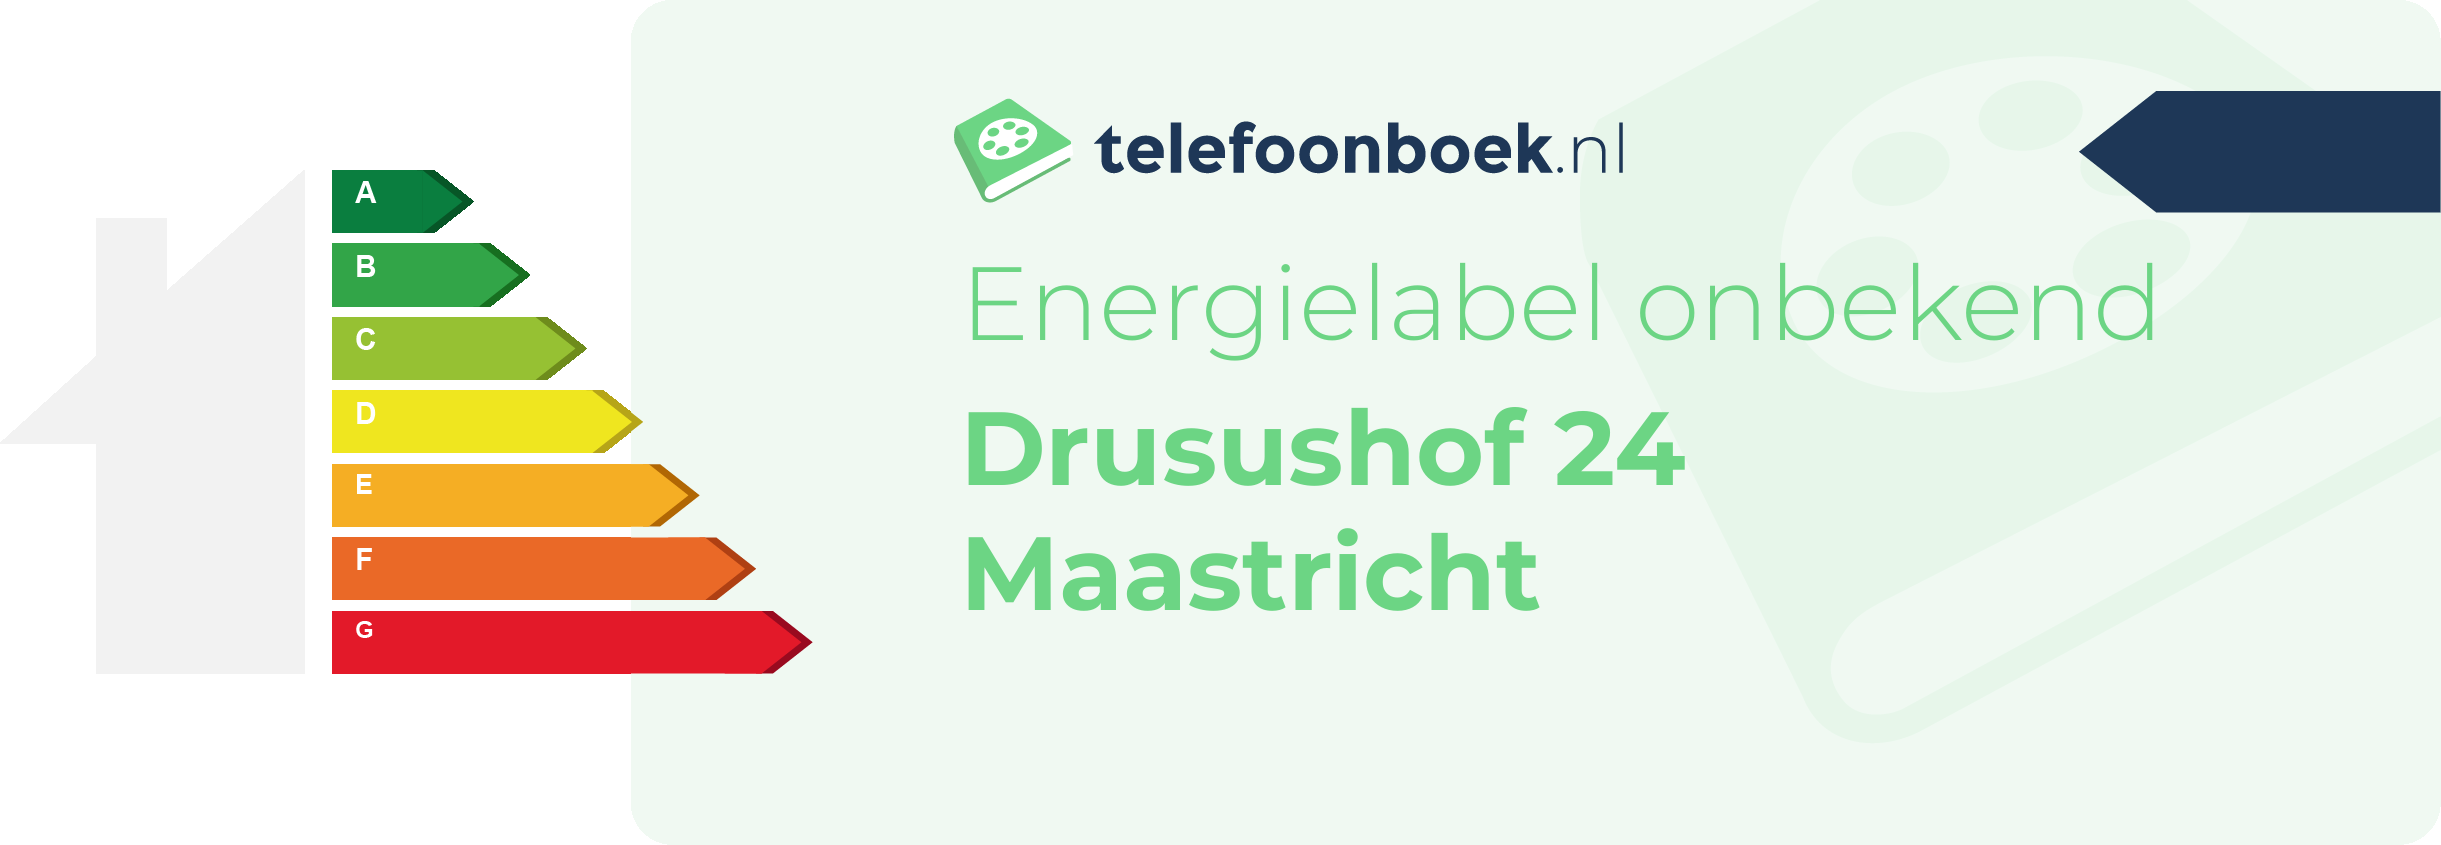 Energielabel Drusushof 24 Maastricht